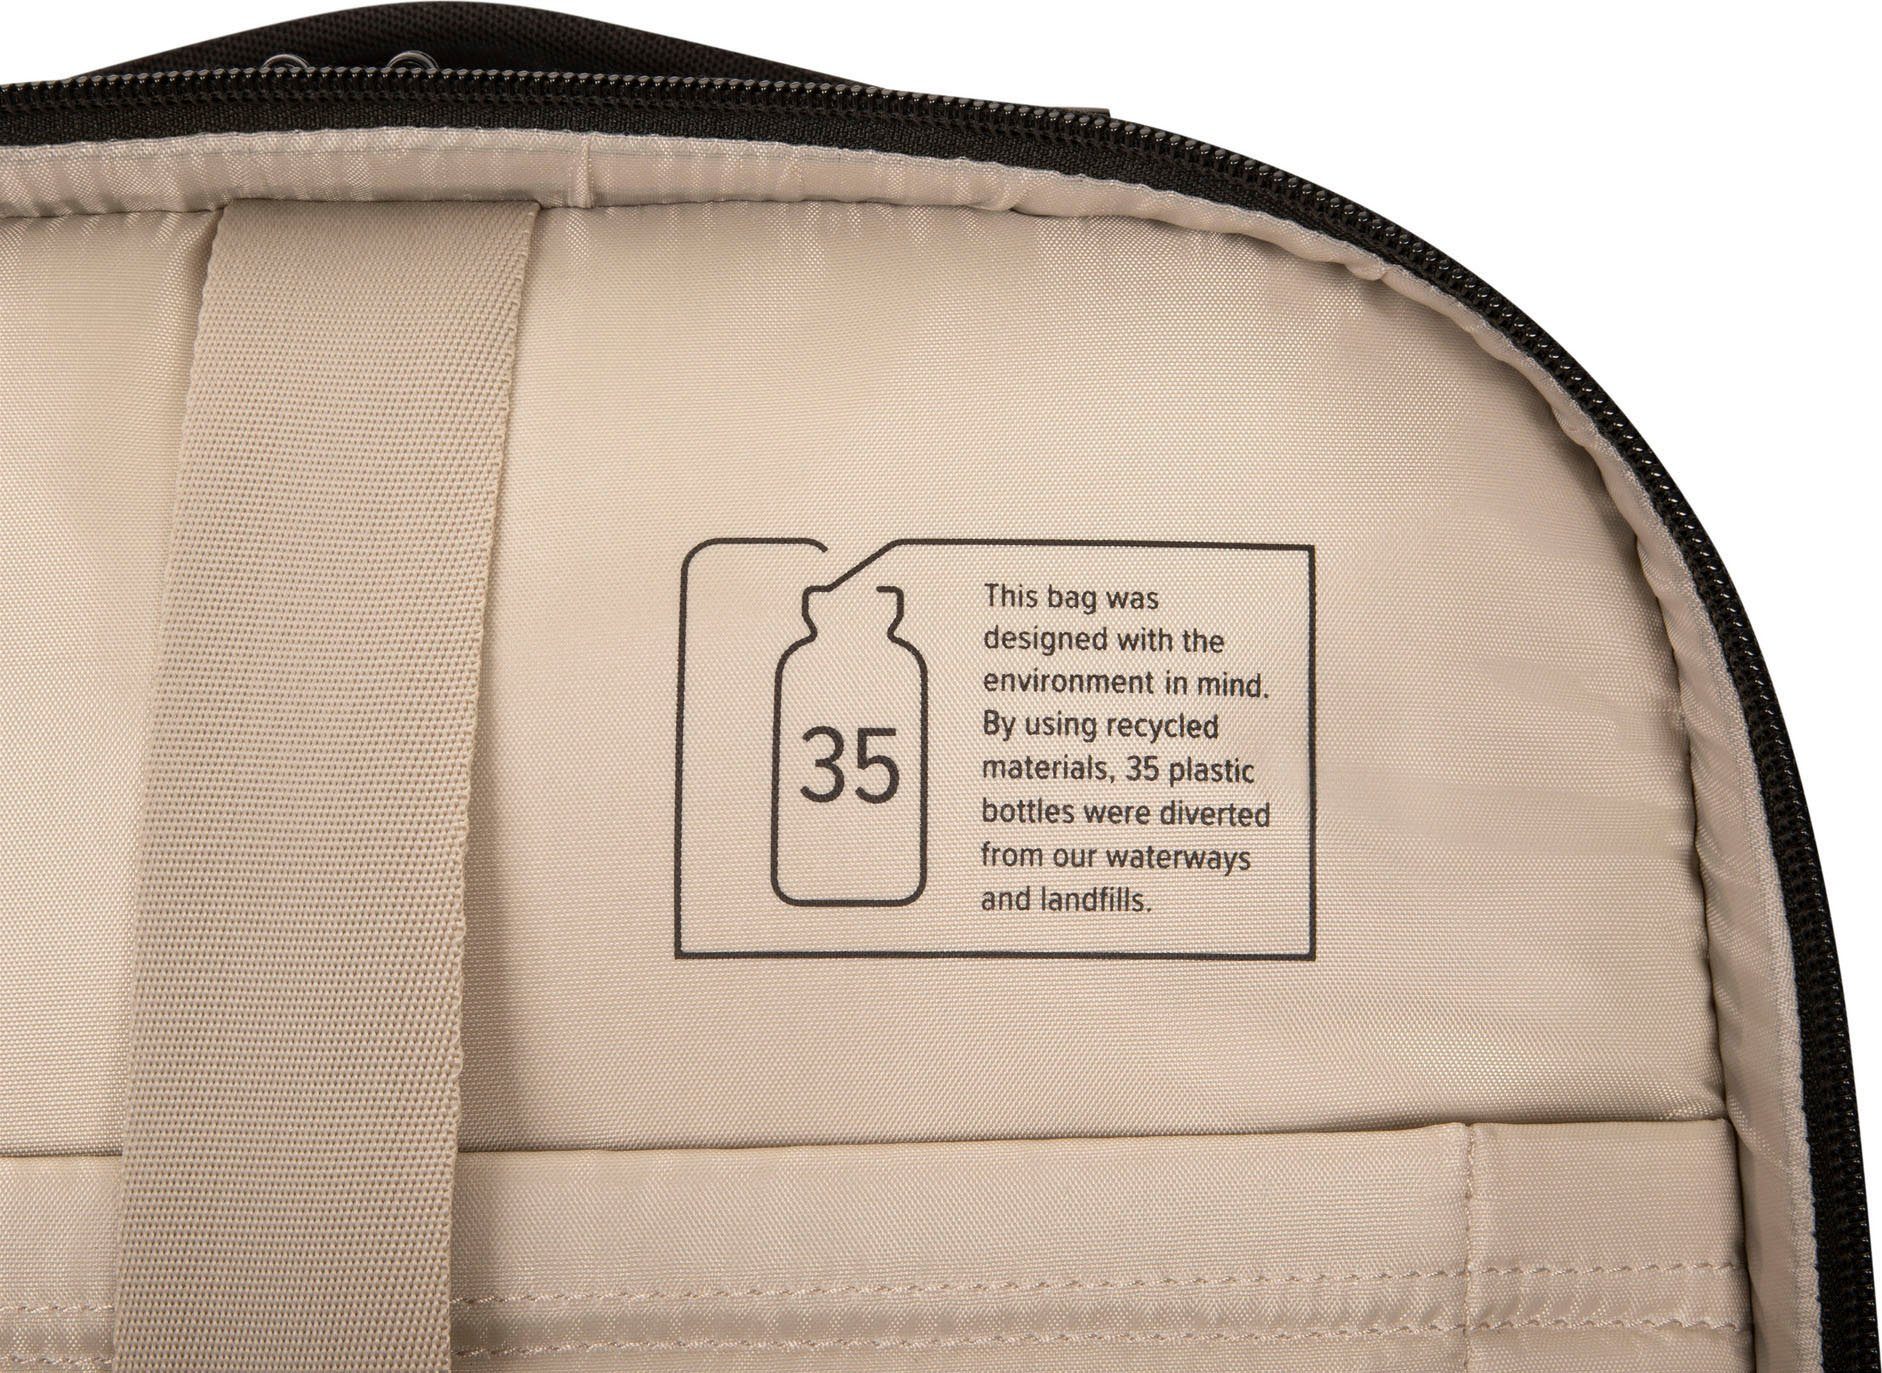 15.6 Backpack Rolling Tech Laptoptasche Mobile Targus Traveller